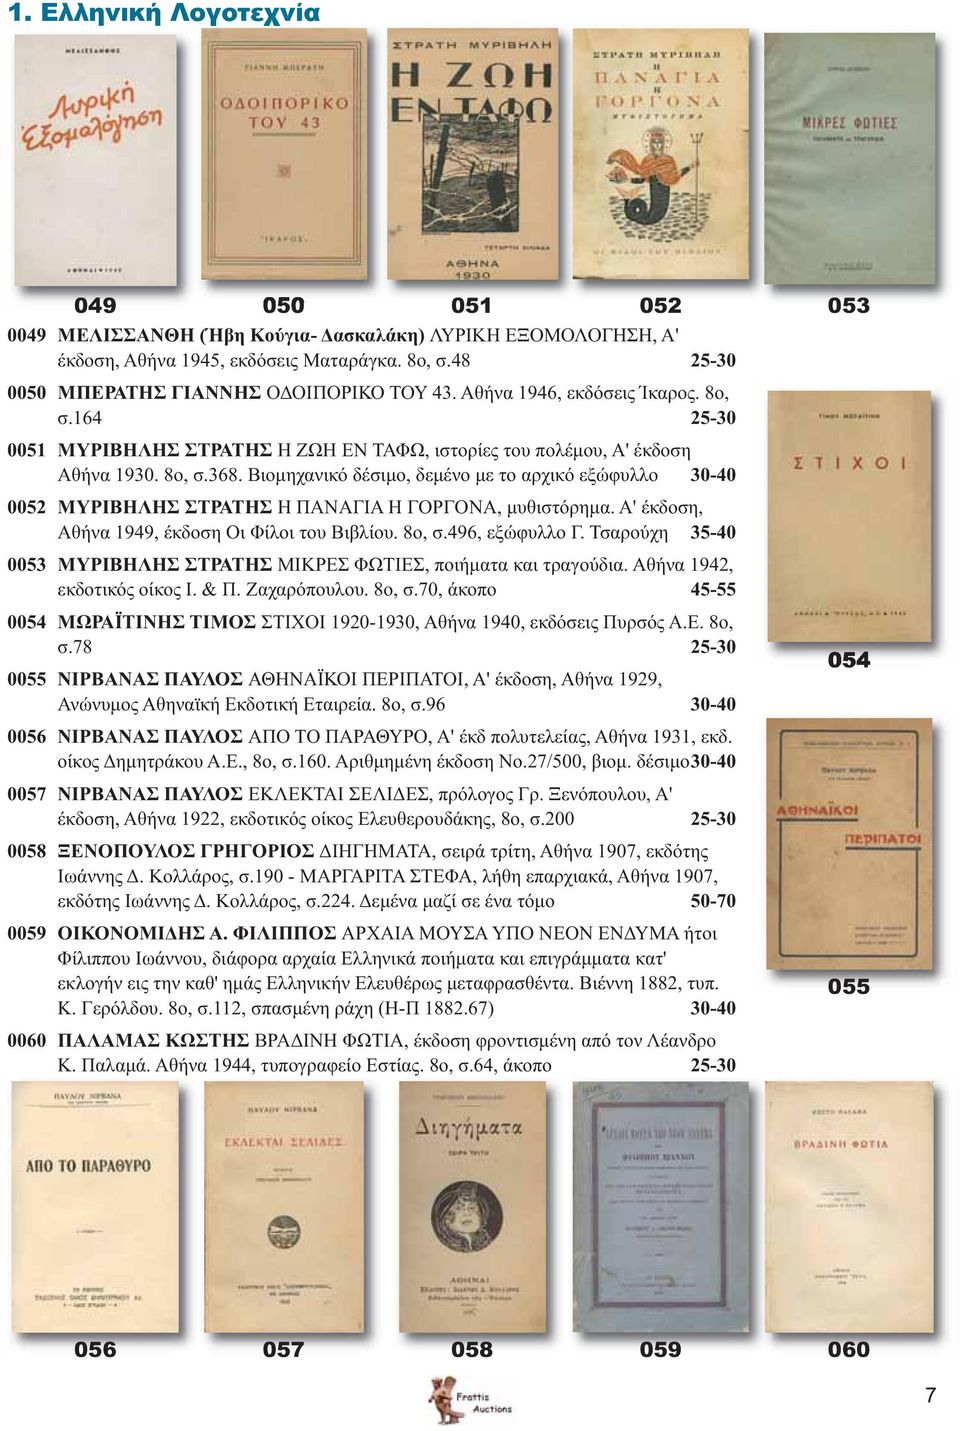 Βιομηχανικό δέσιμο, δεμένο με το αρχικό εξώφυλλο 30-40 0052 ΜΥΡΙΒΗΛΗΣ ΣΤΡΑΤΗΣ Η ΠΑΝΑΓΙΑ Η ΓΟΡΓΟΝΑ, μυθιστόρημα. Α' έκδοση, Αθήνα 1949, έκδοση Οι Φίλοι του Βιβλίου. 8ο, σ.496, εξώφυλλο Γ.